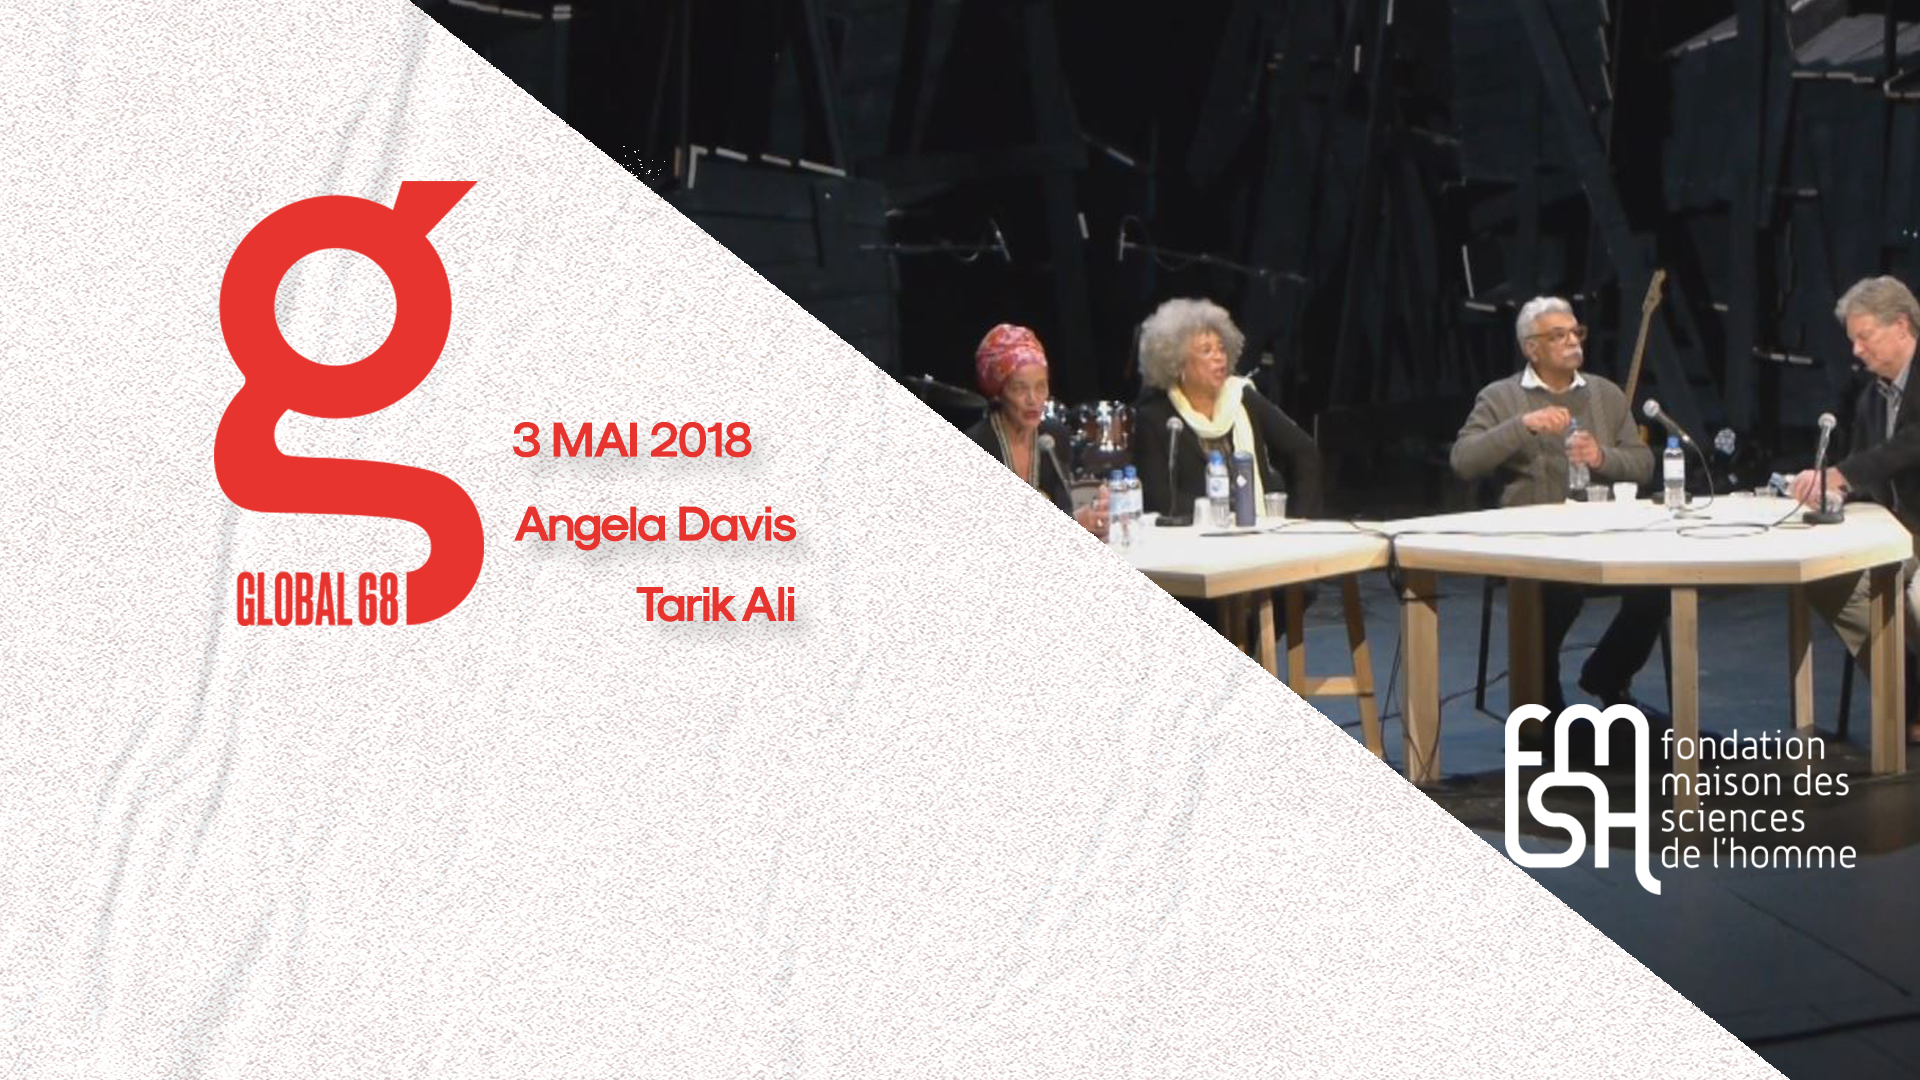 GLOBAL 68 - Solidarité et alliances - Conversation entre Angela Davis et Tariq Ali